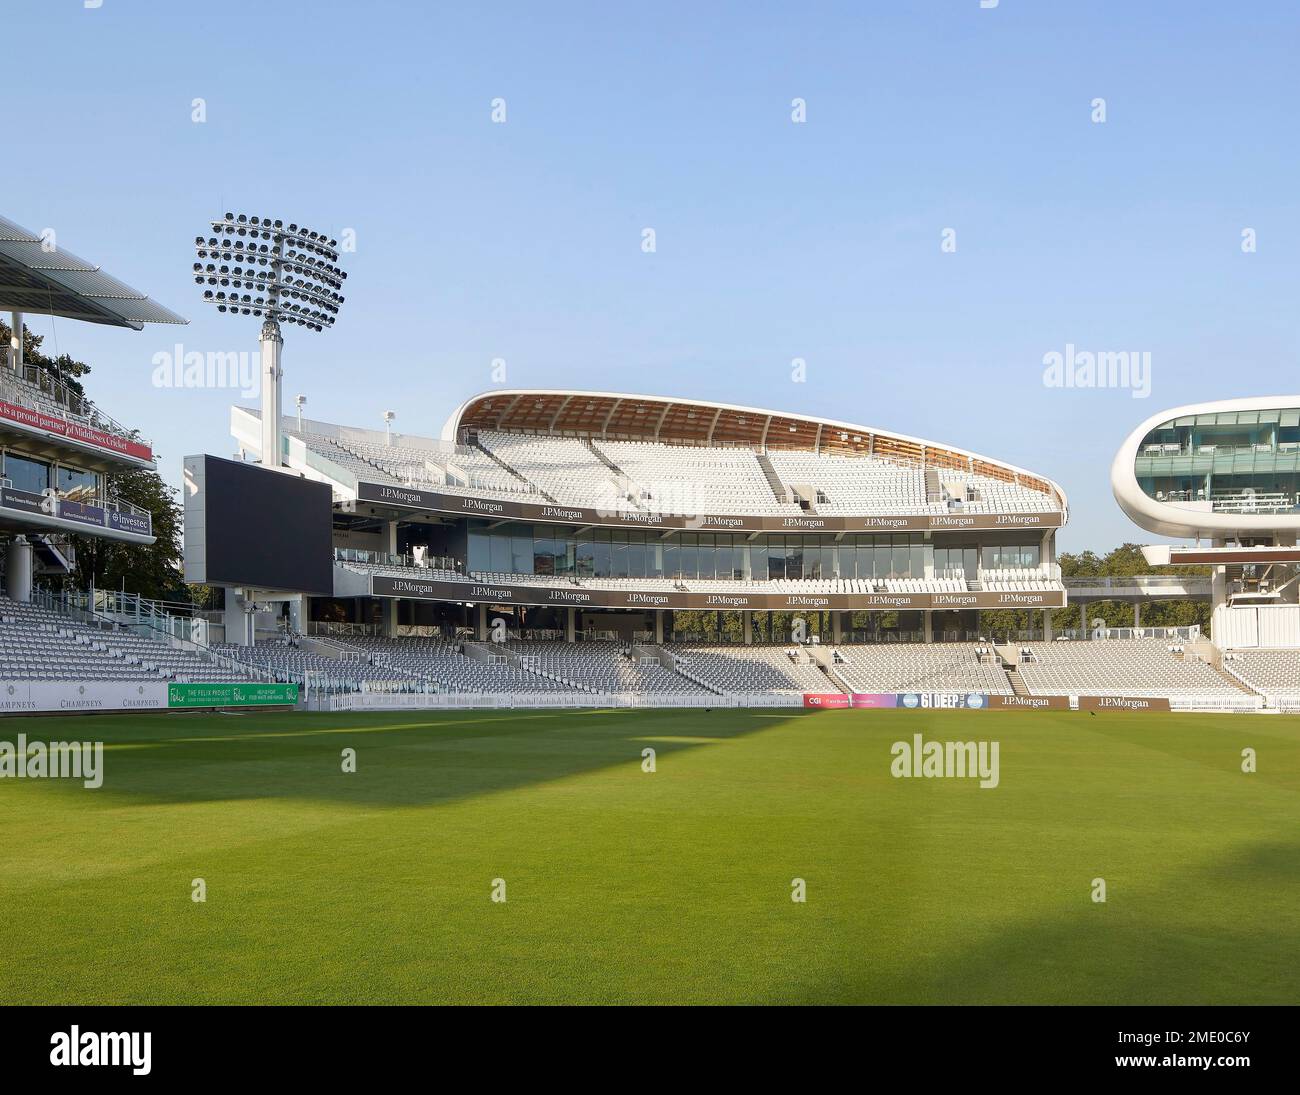 Vista obliqua sul campo da cricket con supporti. Lord's Cricket Ground, Londra, Regno Unito. Architetto: Wilkinson Eyre Architects, 2021. Foto Stock